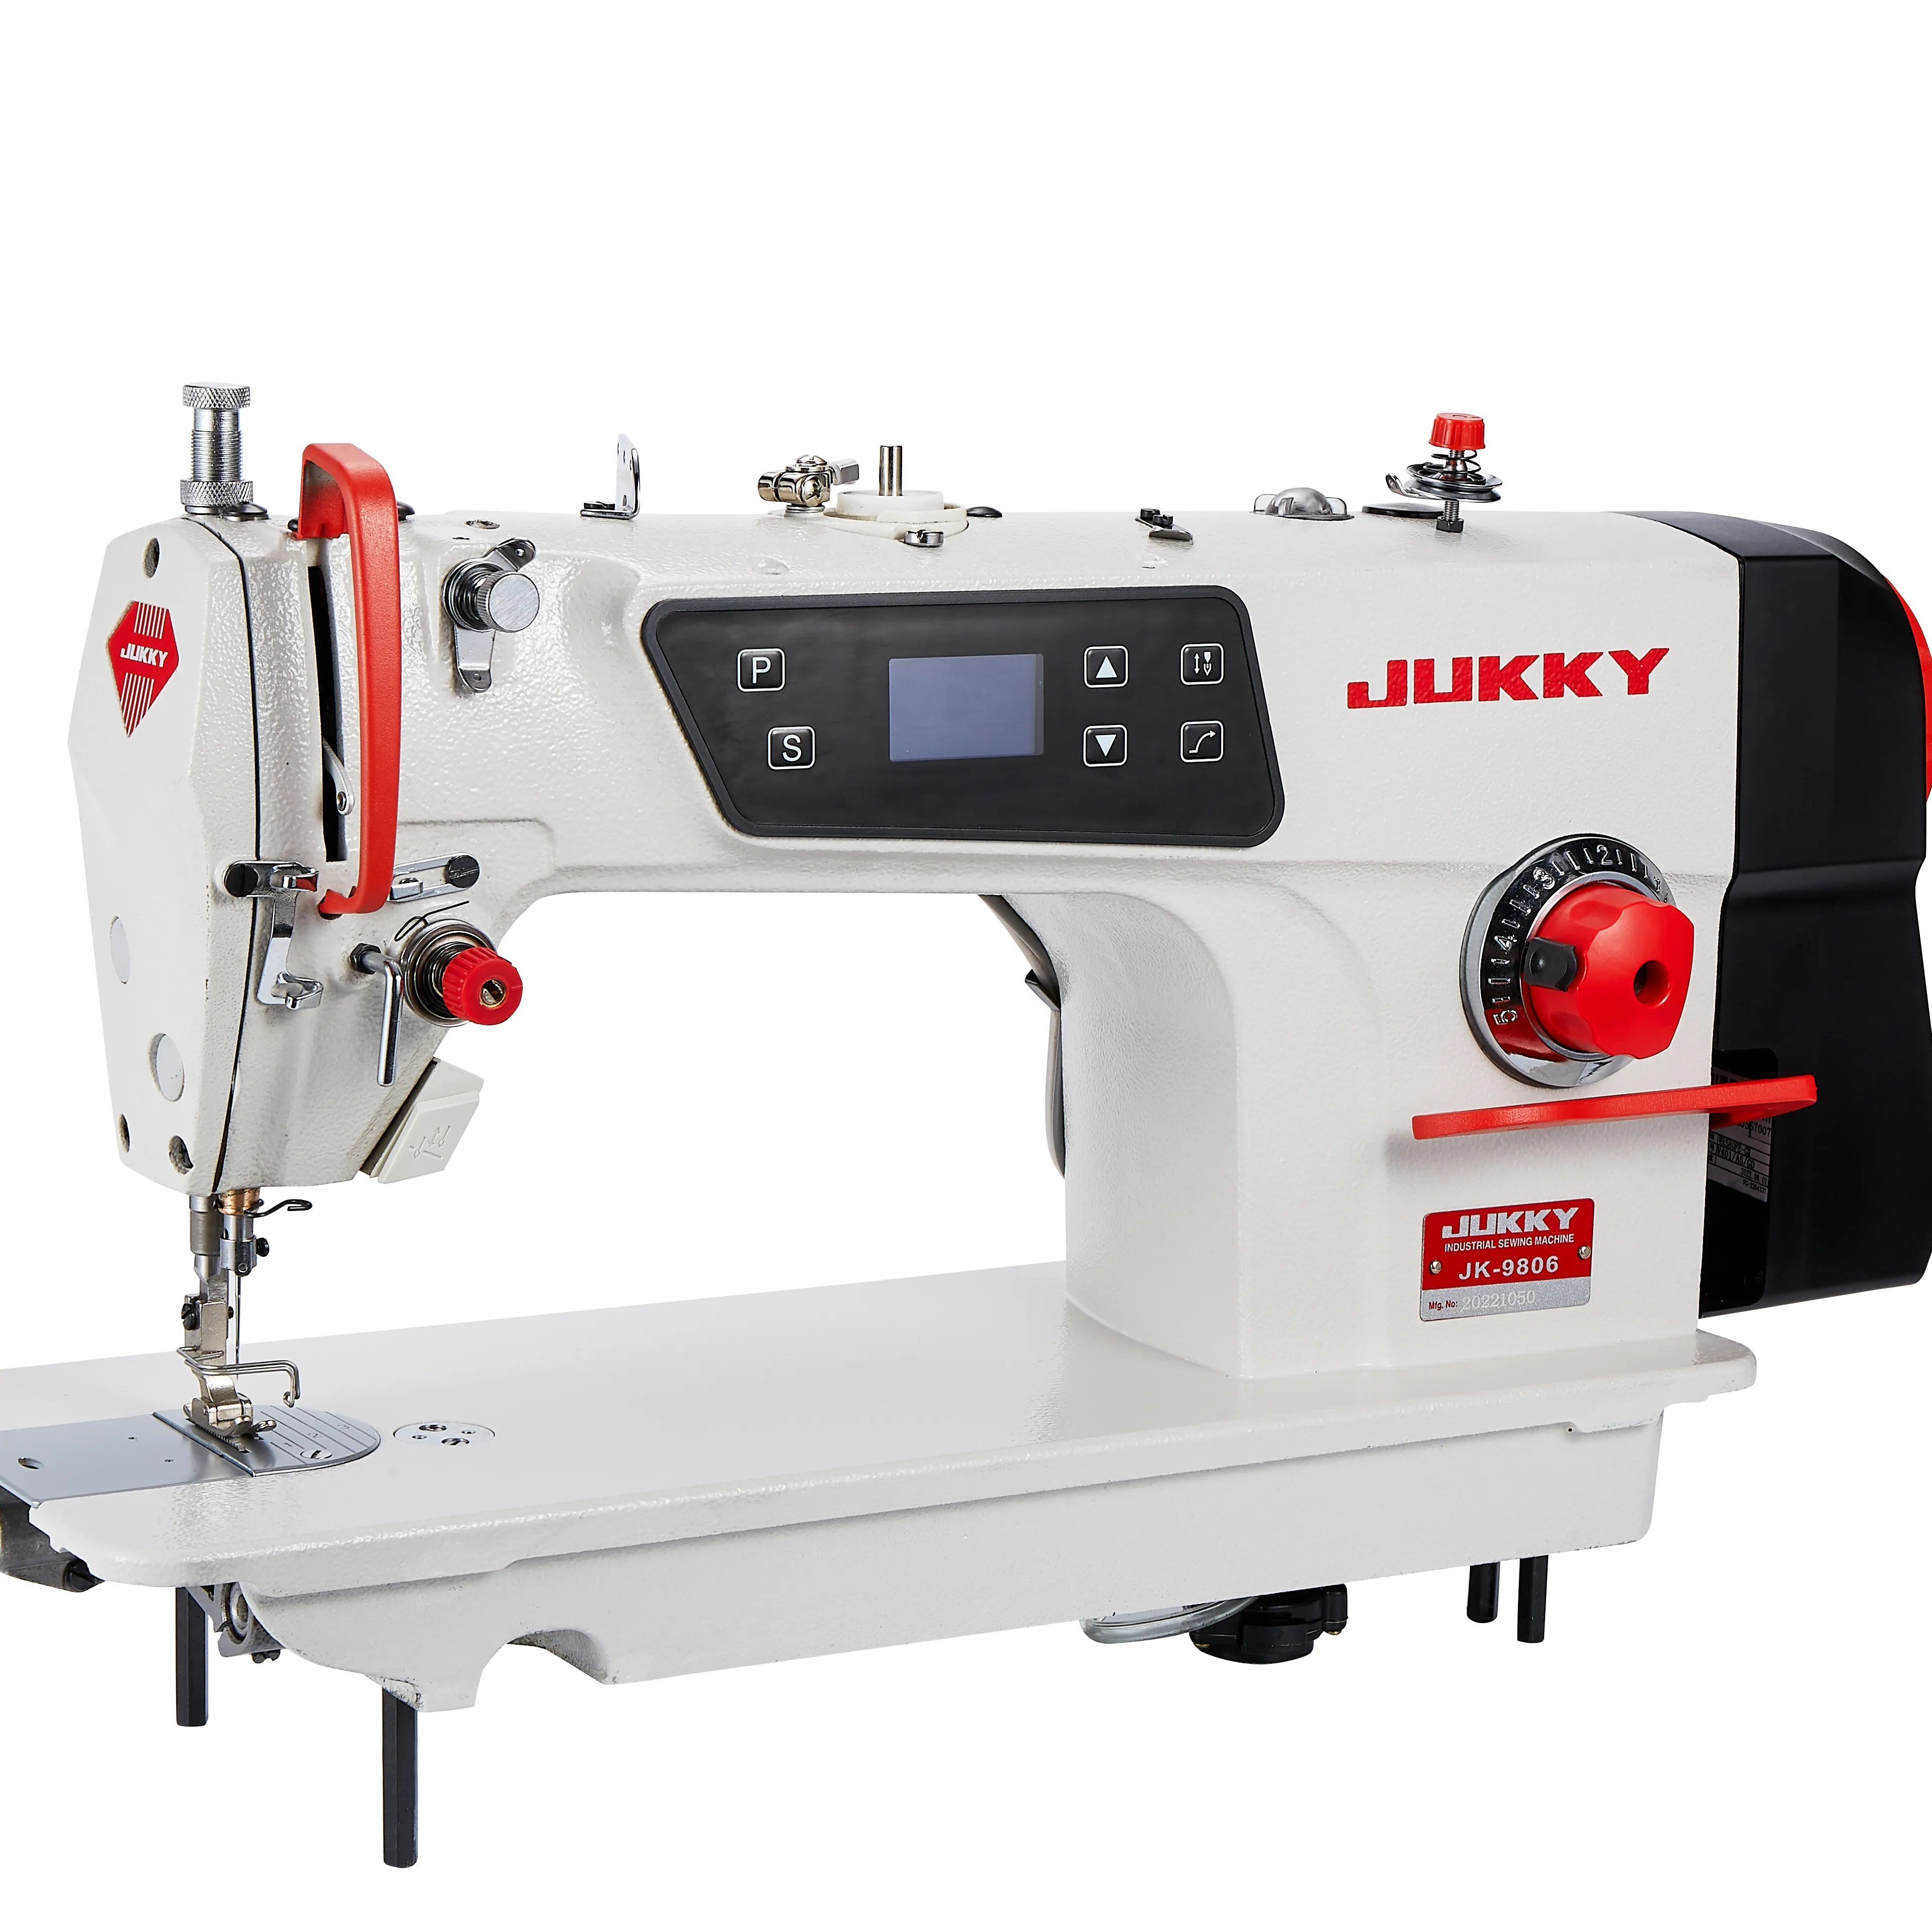 Jukky servo motor, dispositivo direto 9800 servo motor usado máquina de costura industrial da agulha única